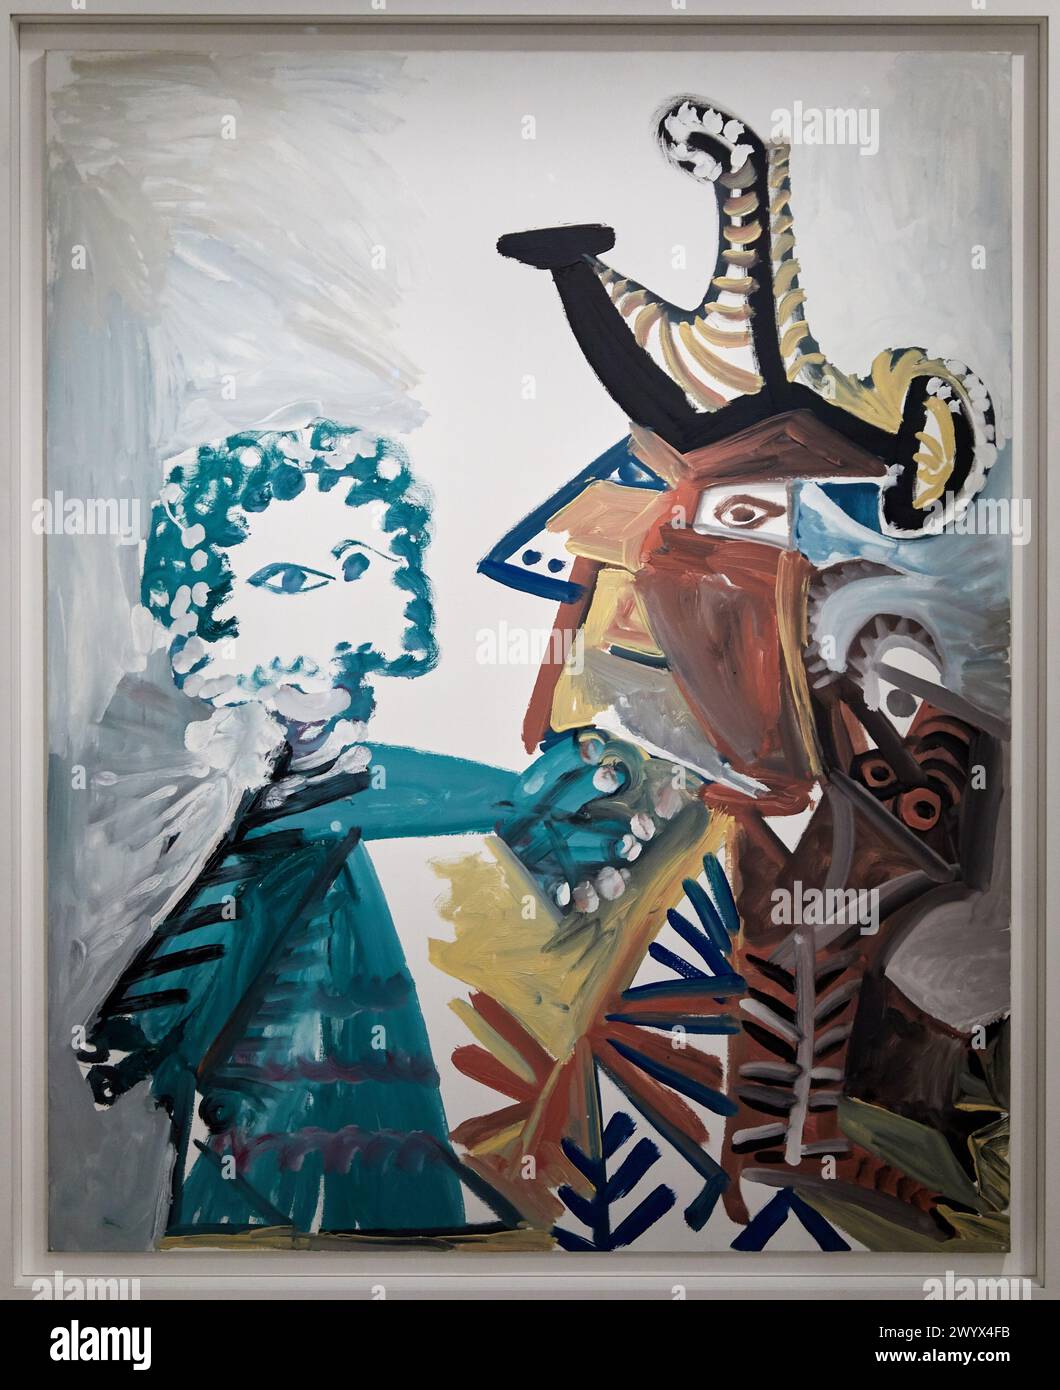 Mousquetaire et enfant, 1972, Pablo Picasso, 1881-1973, Musée de lArmée, Paris, Frankreich. Stockfoto